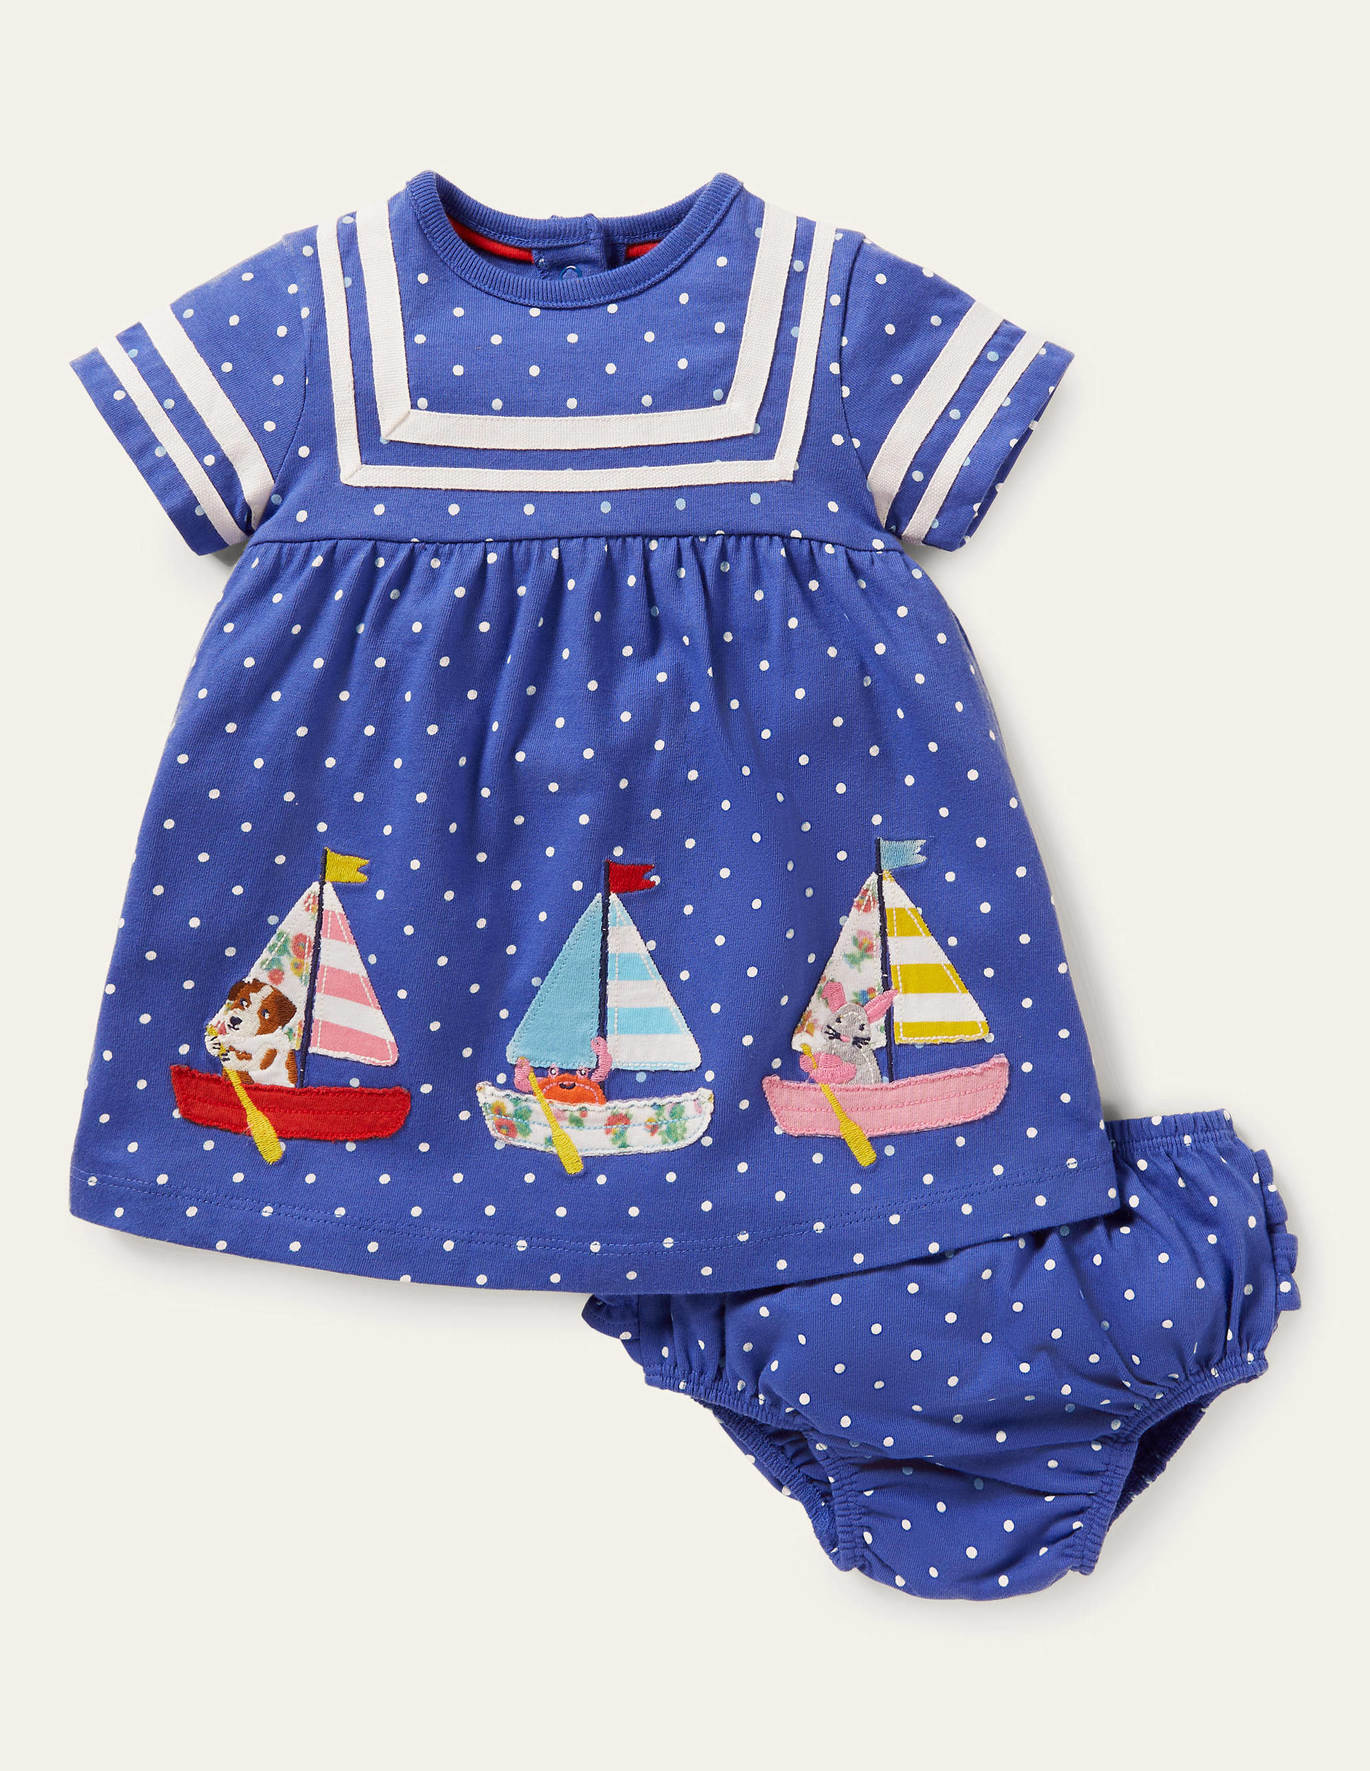 Boden Sailor Dress - Bluebell Blue Pin Spot Boats